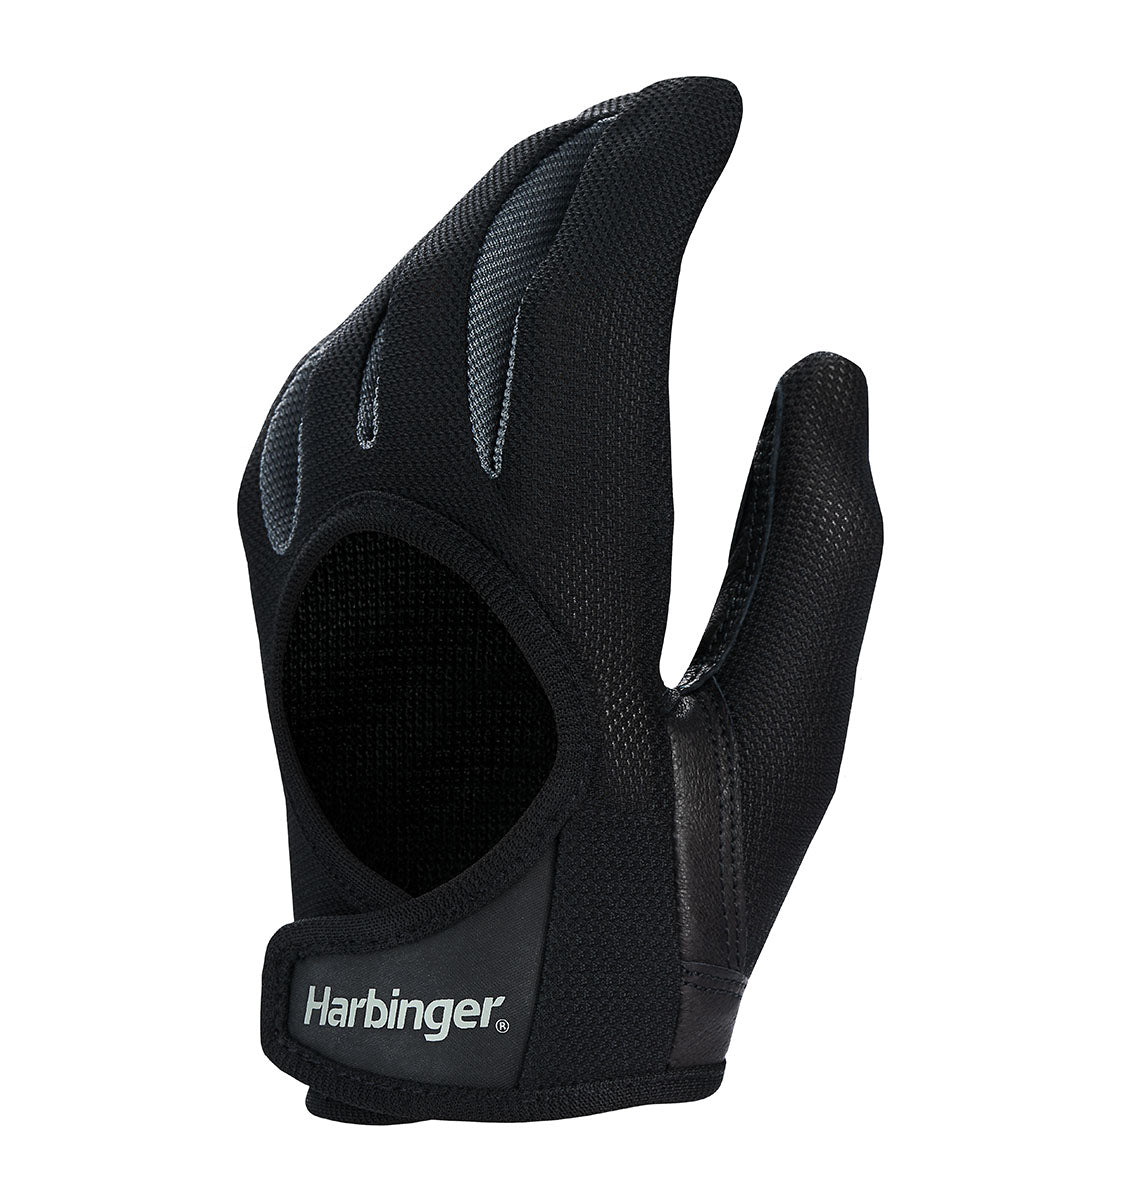 Harbinger Power Protect Gloves - Women's - Black - 2